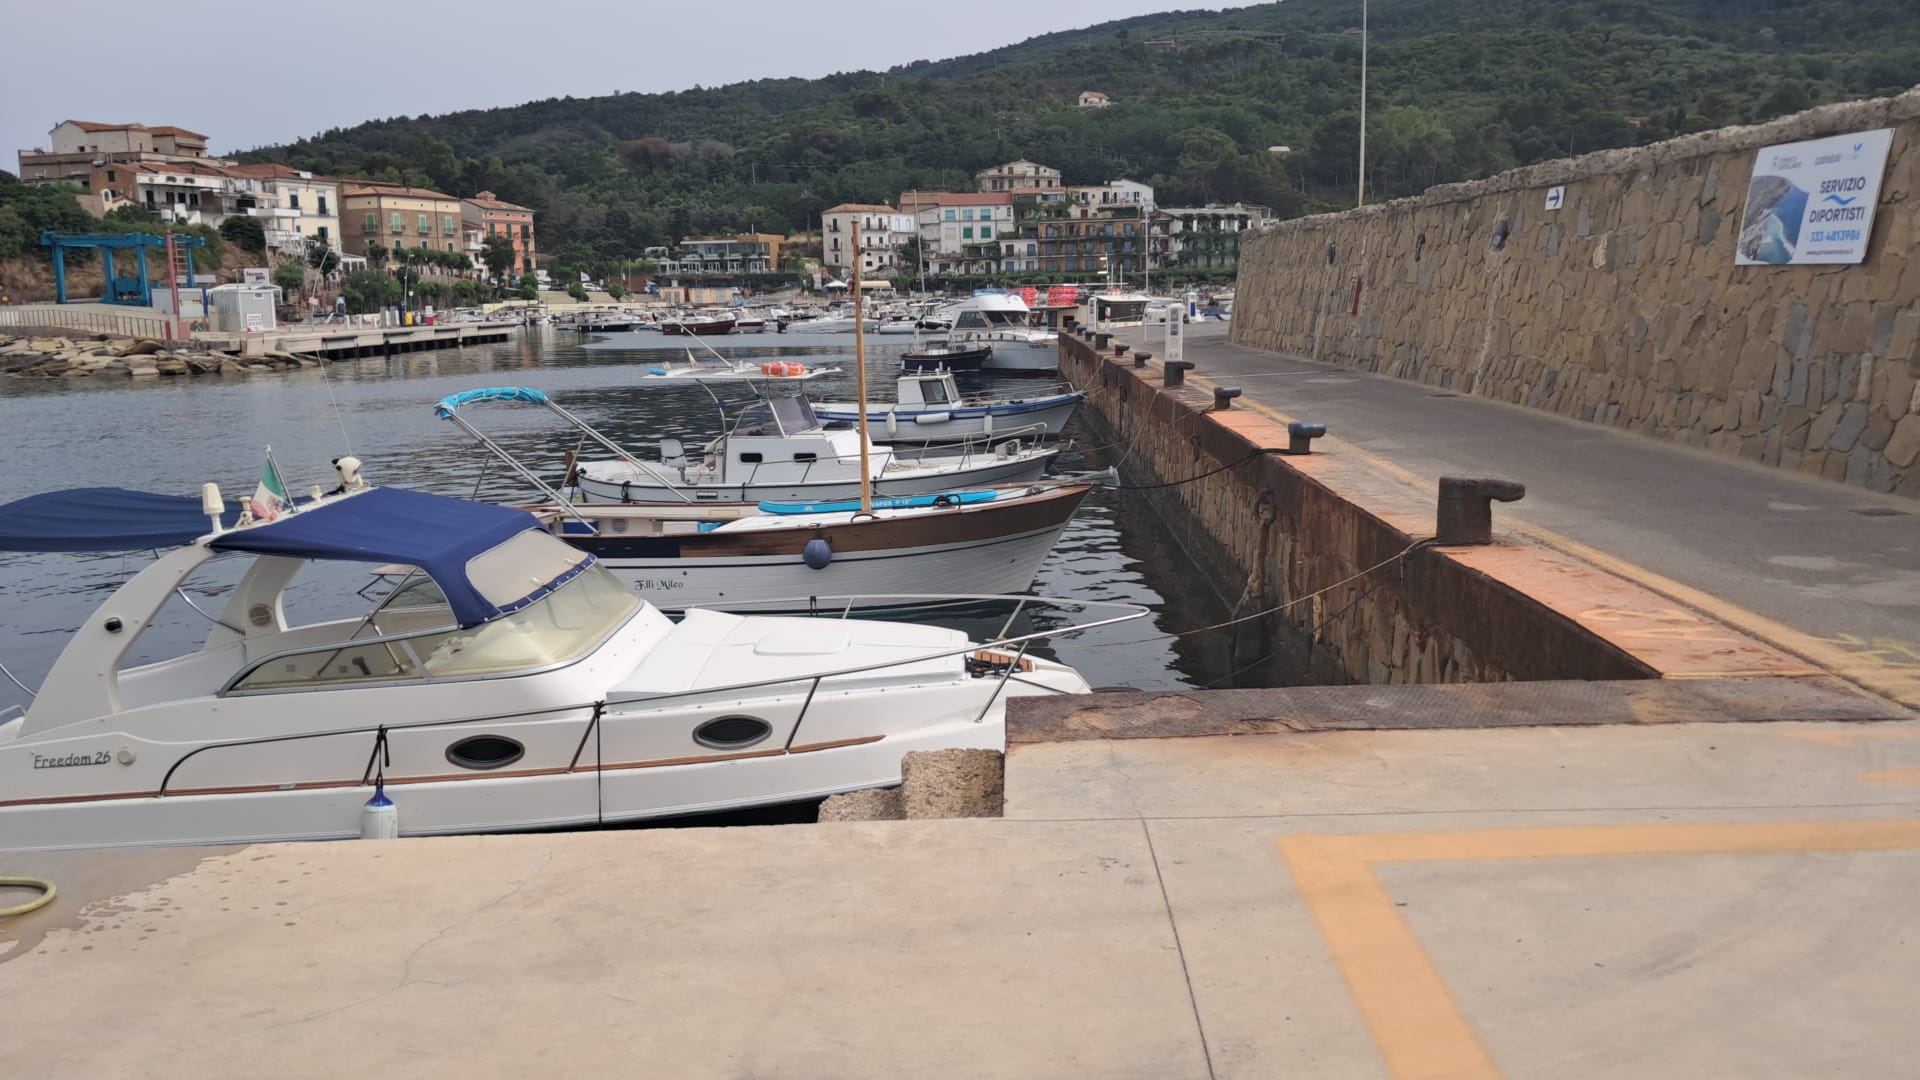 Porto di Castellabate, troppe richieste posti barca: individuate aree aggiuntive per ormeggio